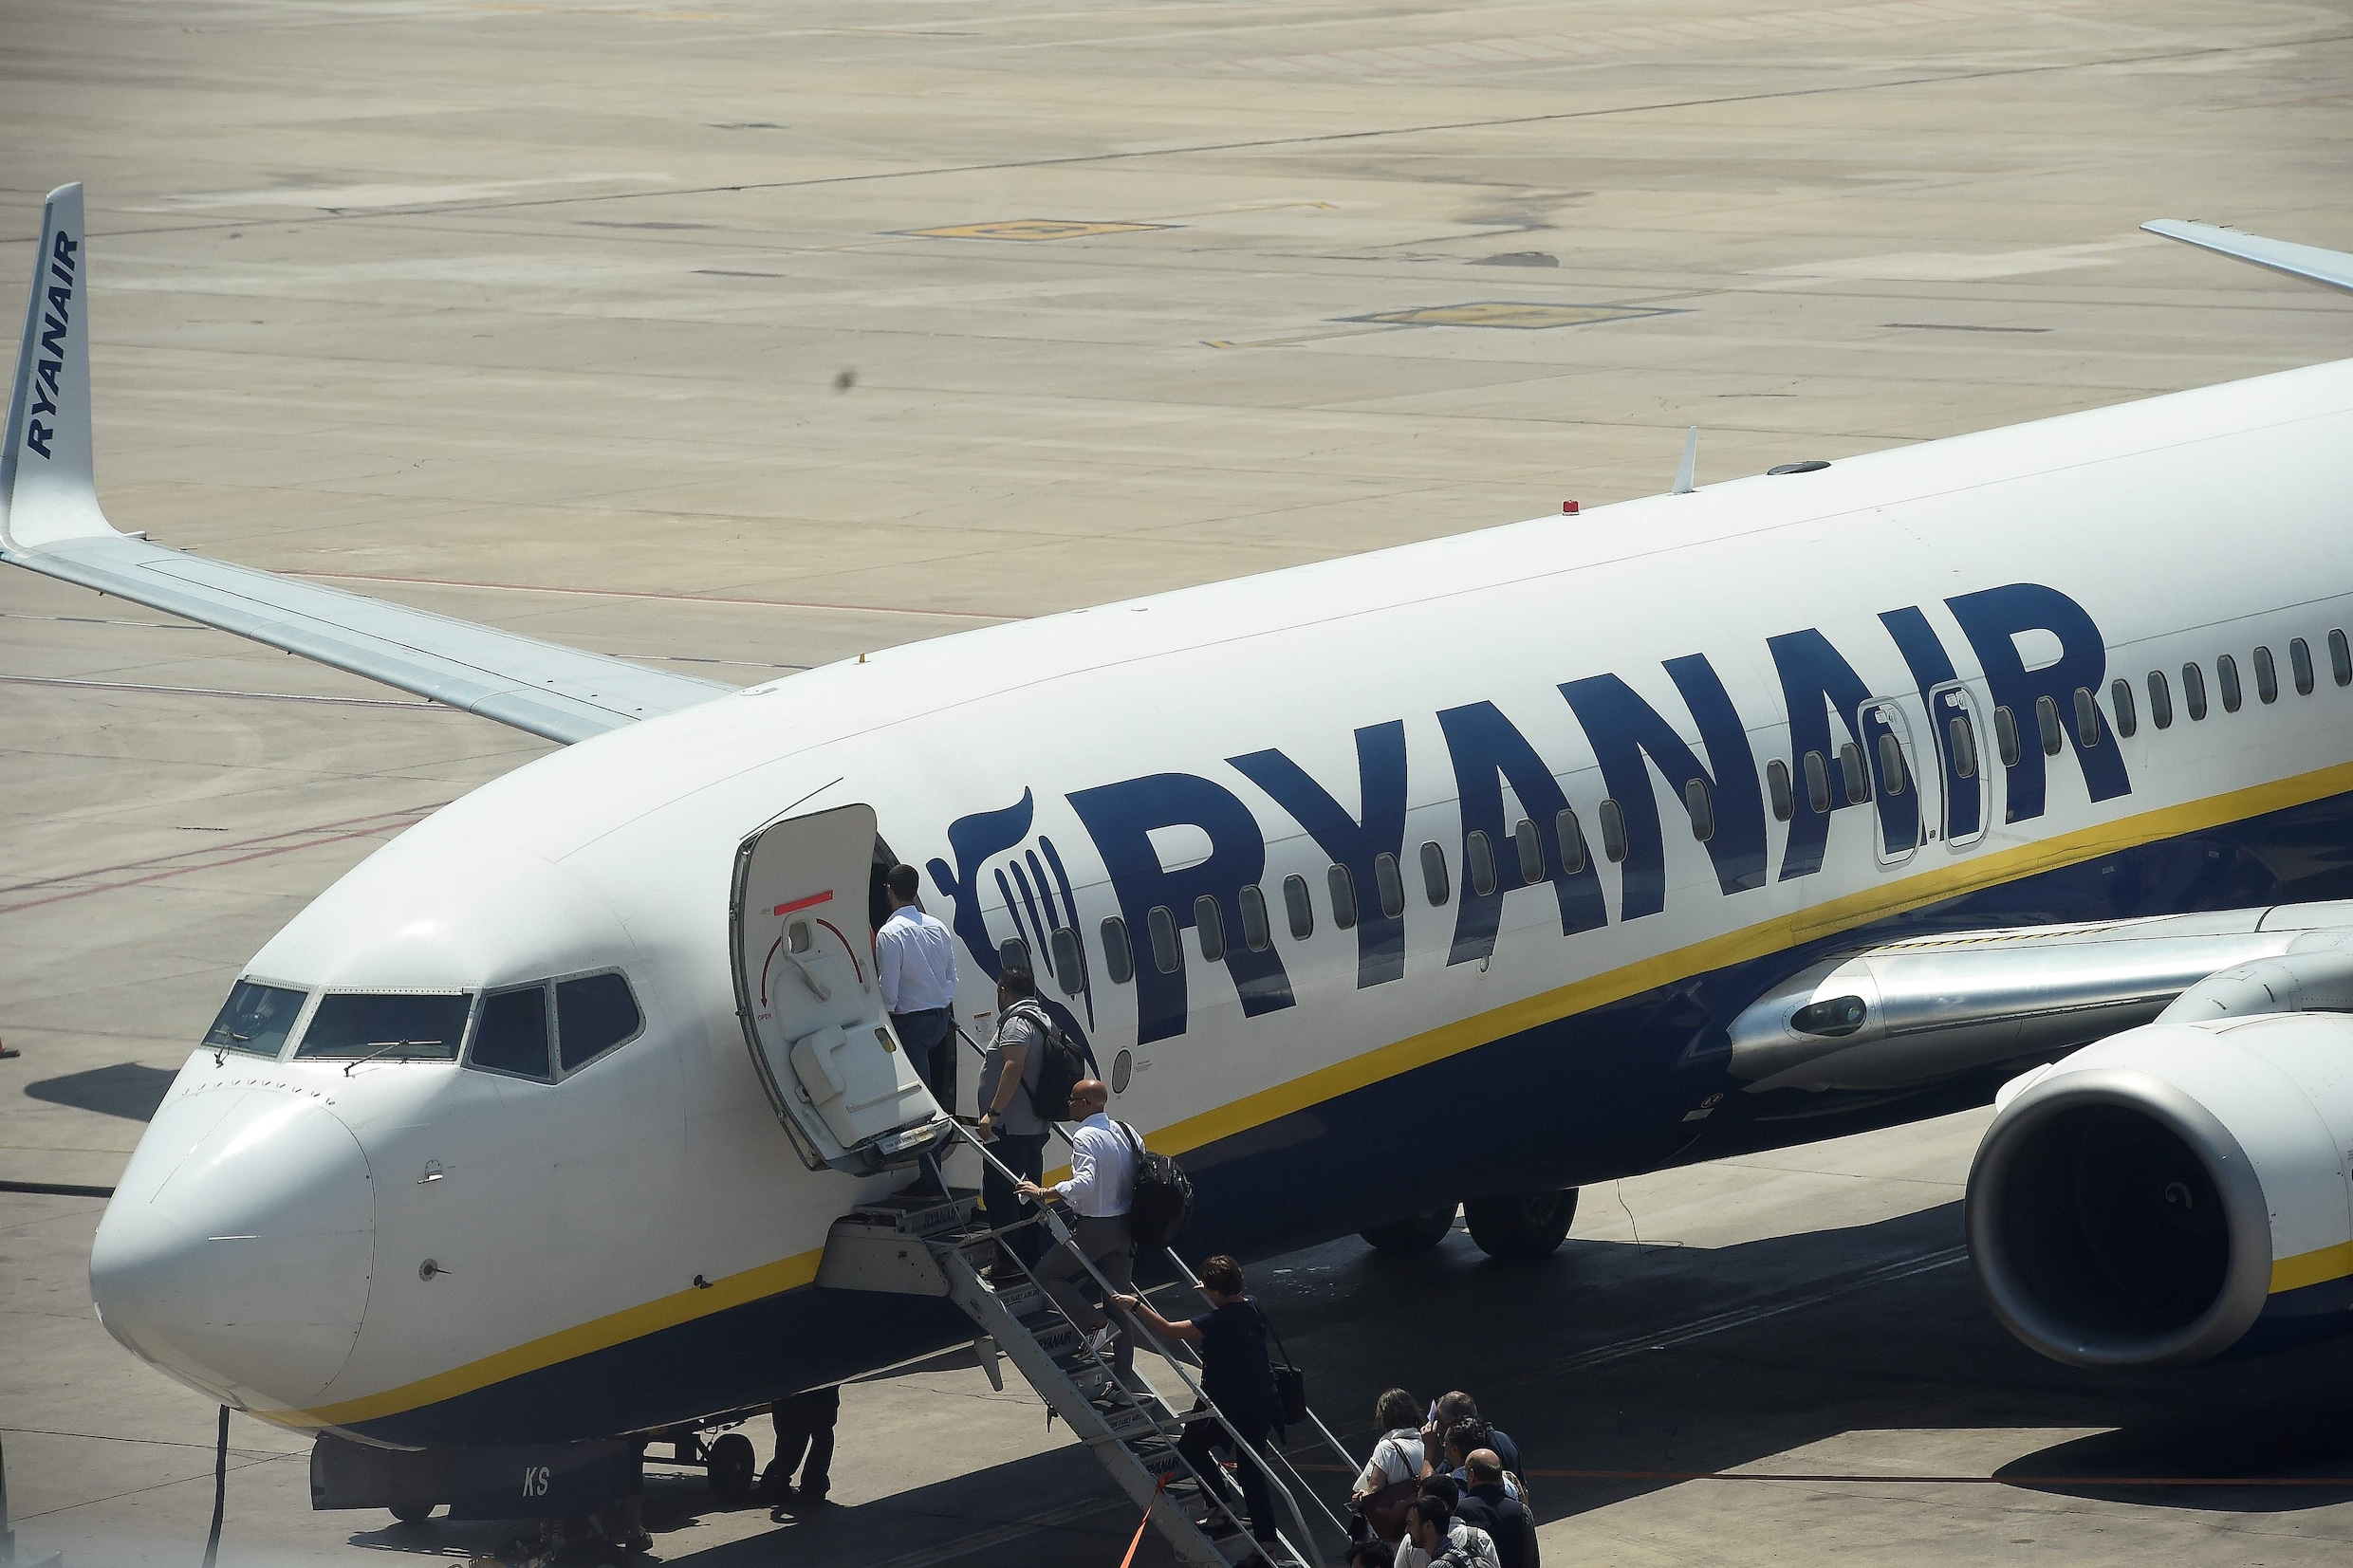 Overleg mislukt: dan toch stakingen bij Ryanair